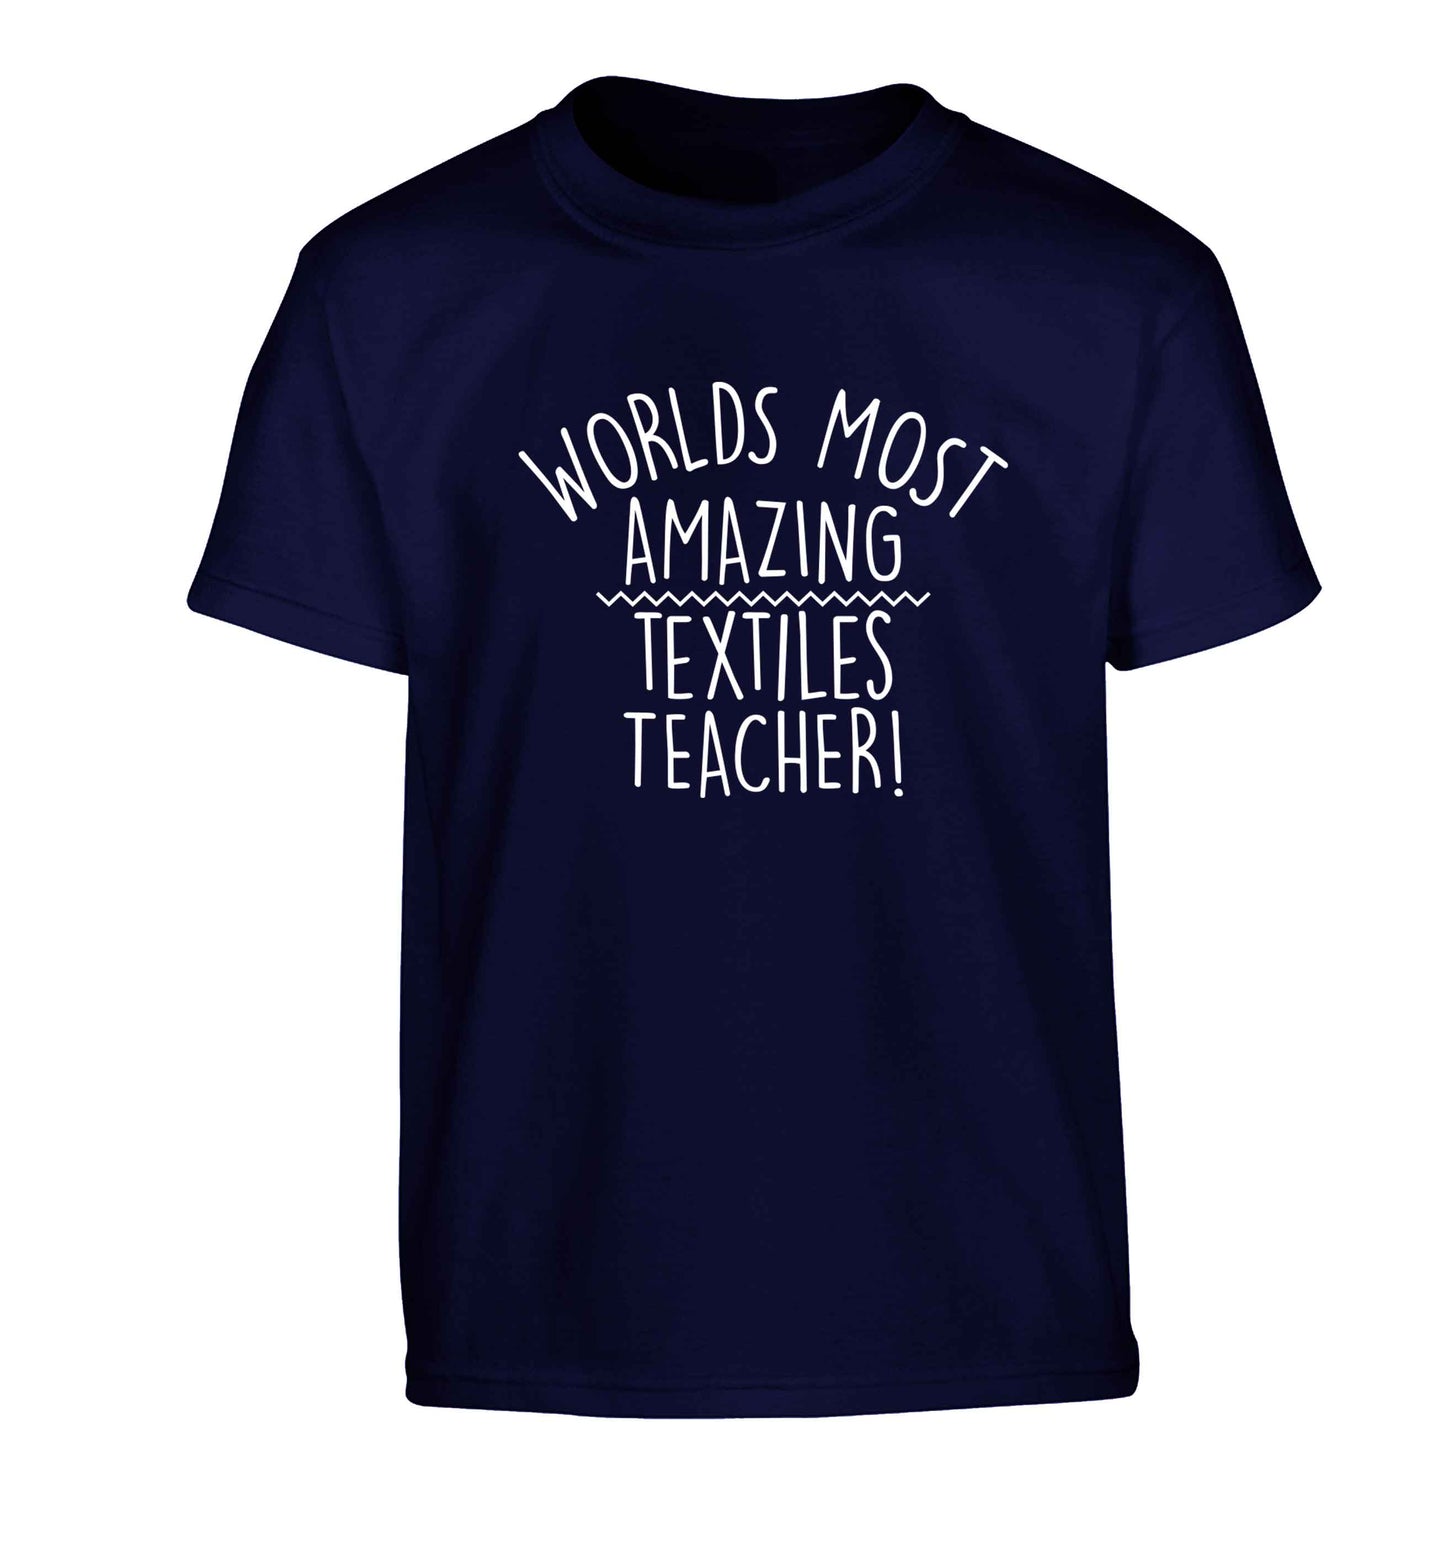 Worlds most amazing textiles teacher Children's navy Tshirt 12-13 Years